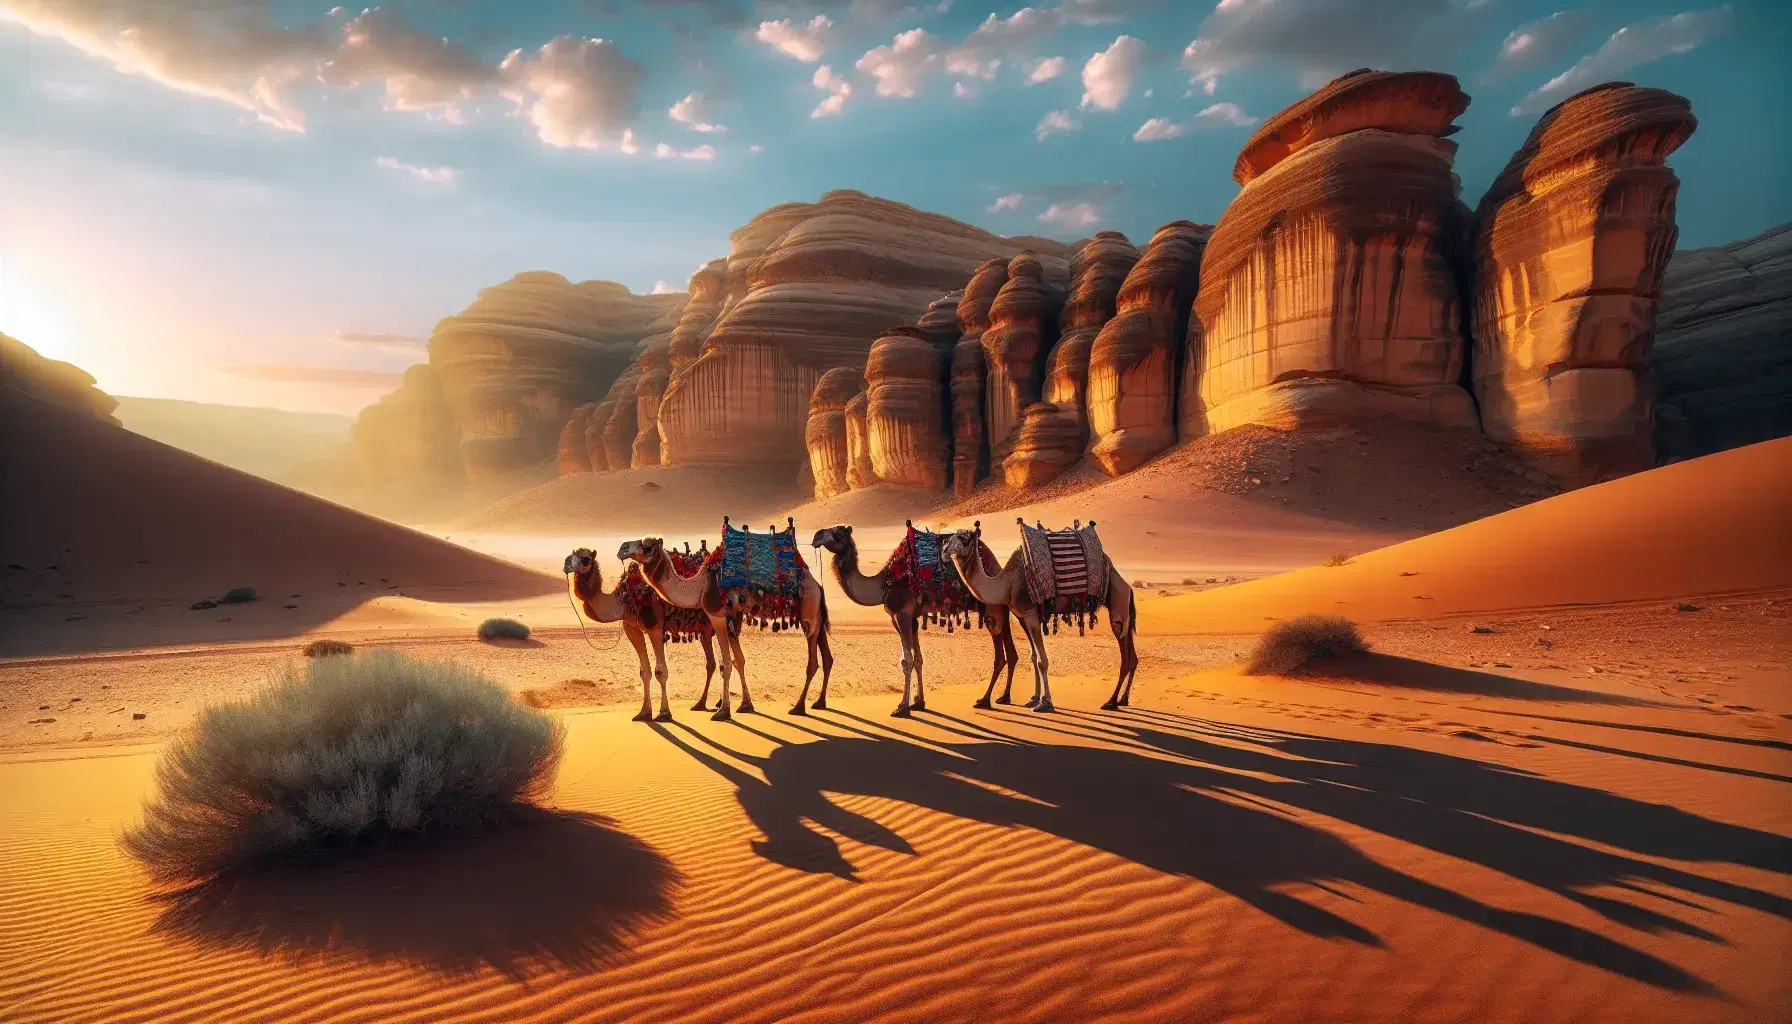 Tre cammelli carichi di coperte colorate in un paesaggio desertico con formazioni rocciose e tende sfumate sullo sfondo.